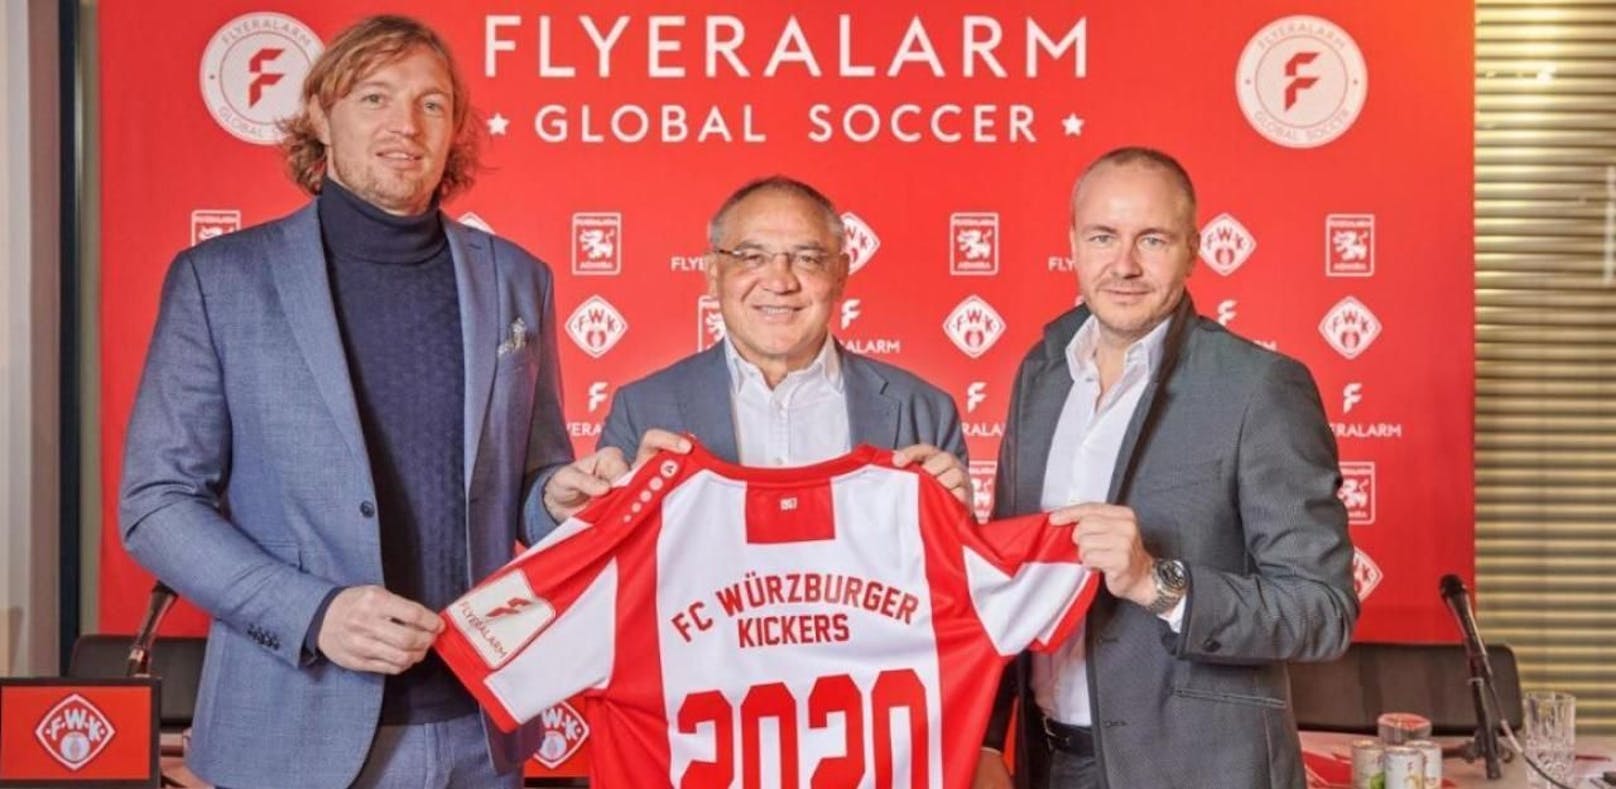 Felix Magath ist zurück im Fußball-Geschäft - als Chef der Abteilung &quot;Flyeralarm Global Soccer&quot; in Würzburg und der Admira. 